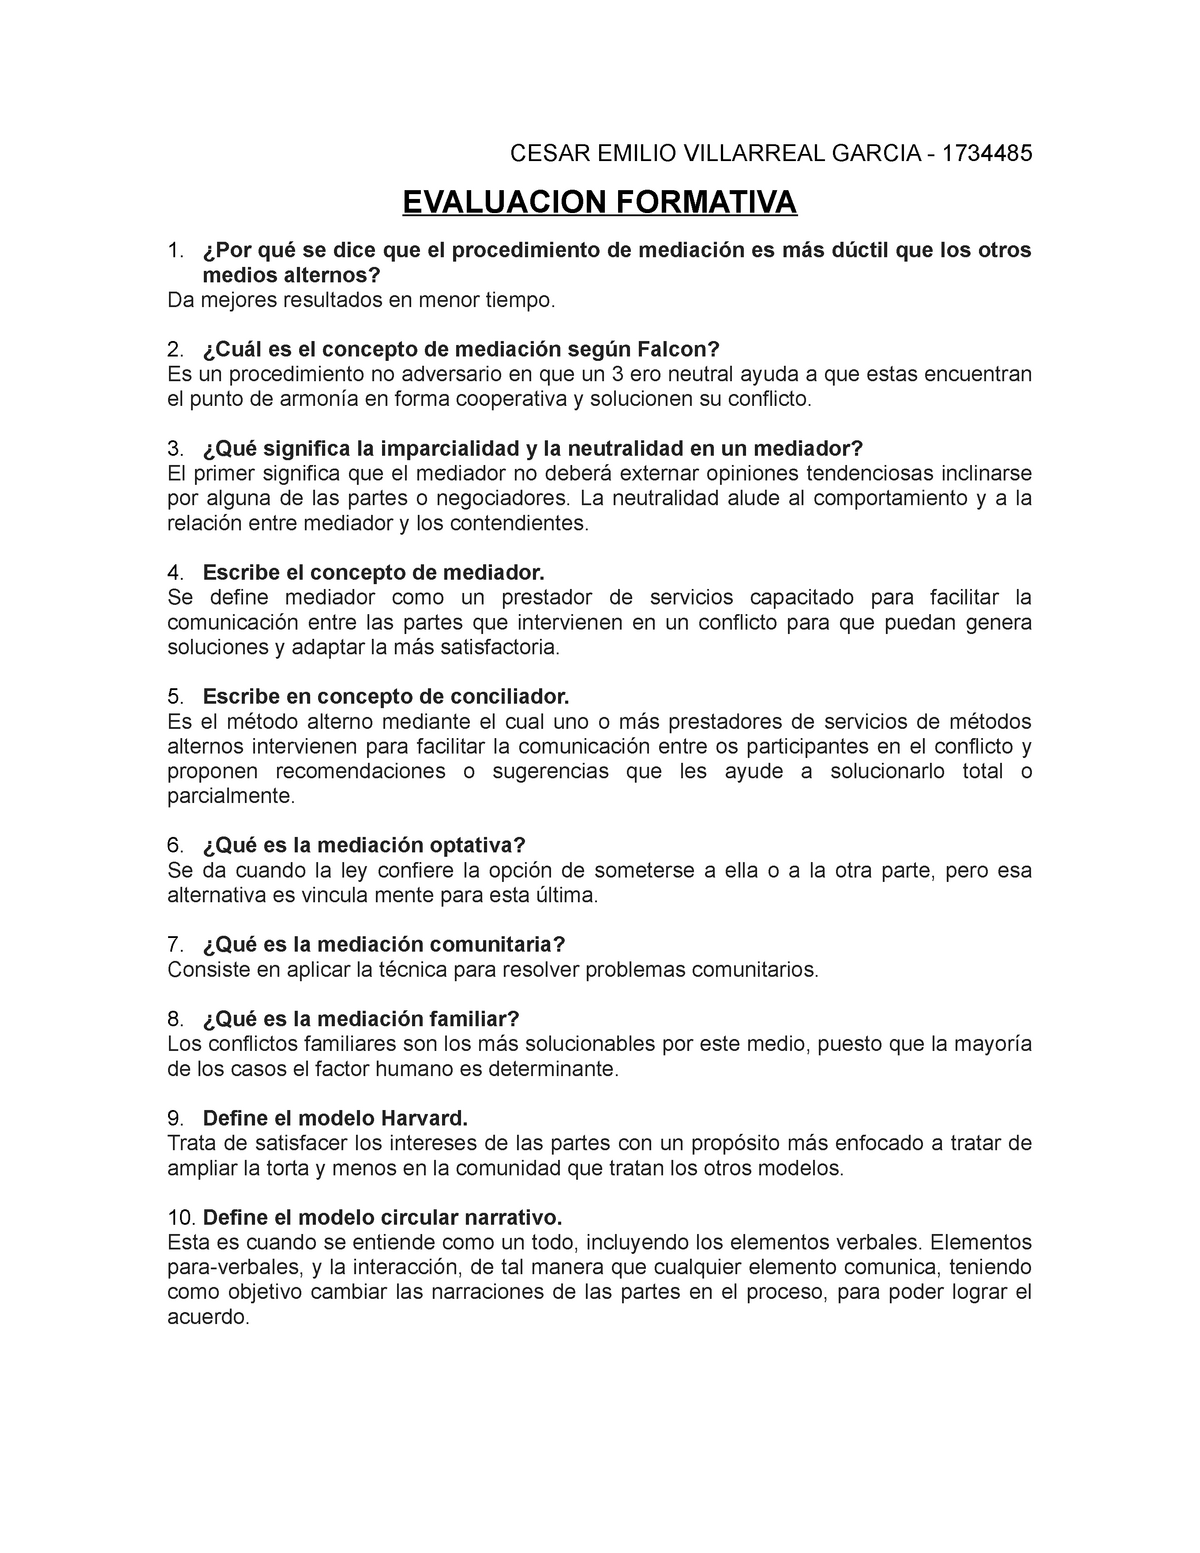 Evaluacion Formativa - evaluación contestada correctamente - CESAR EMILIO  VILLARREAL GARCIA - - Studocu